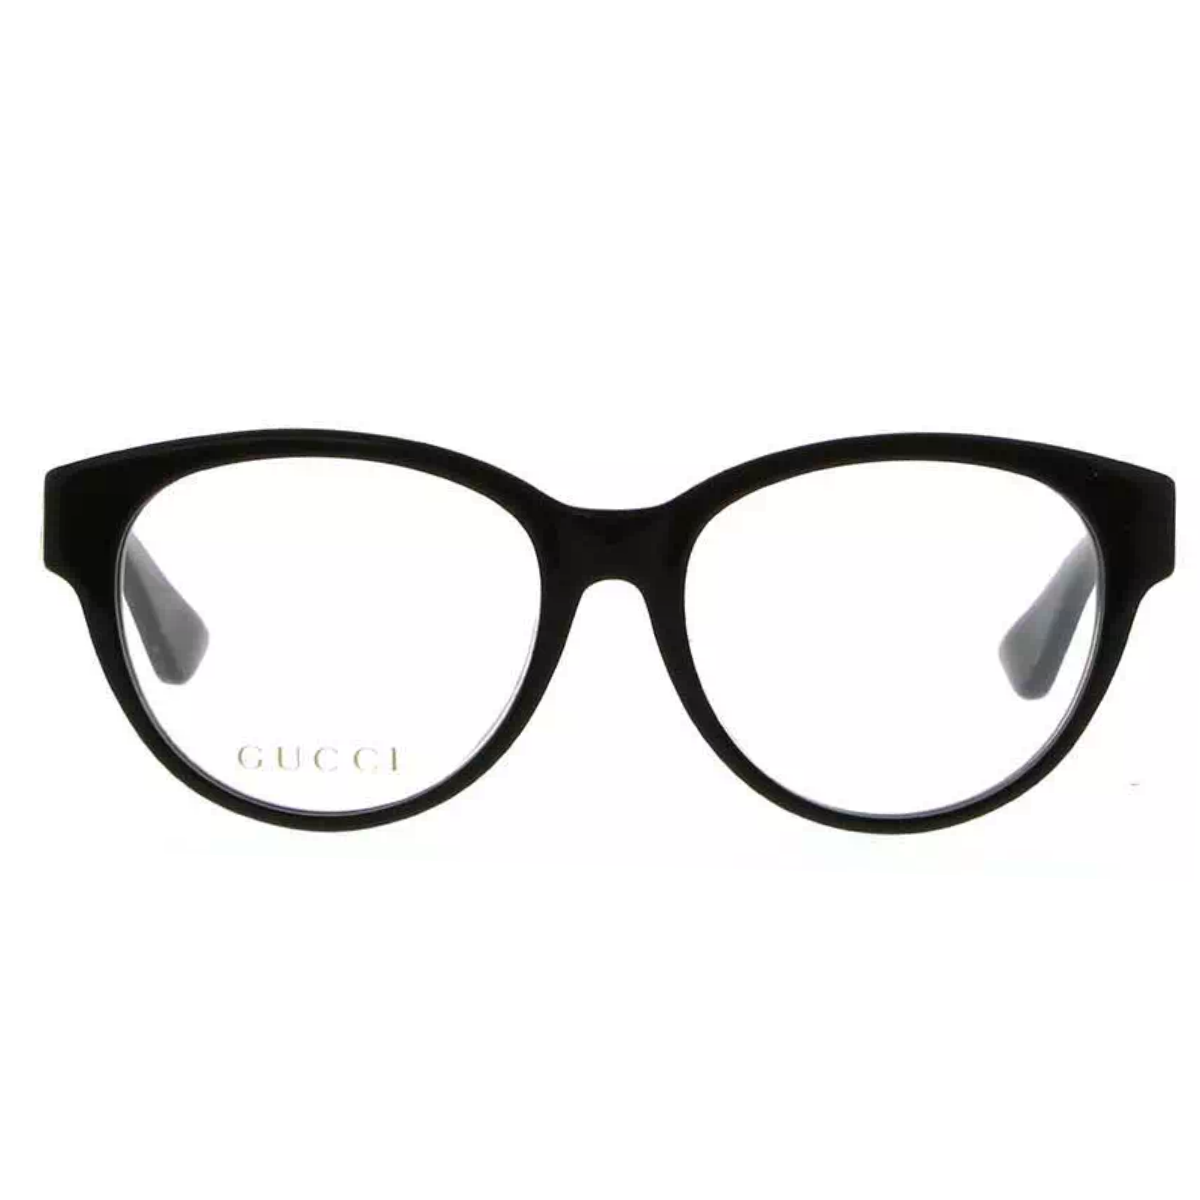 "Gucci 0039OA Frame: Premium Eyewear for Men and Women at Optorium"